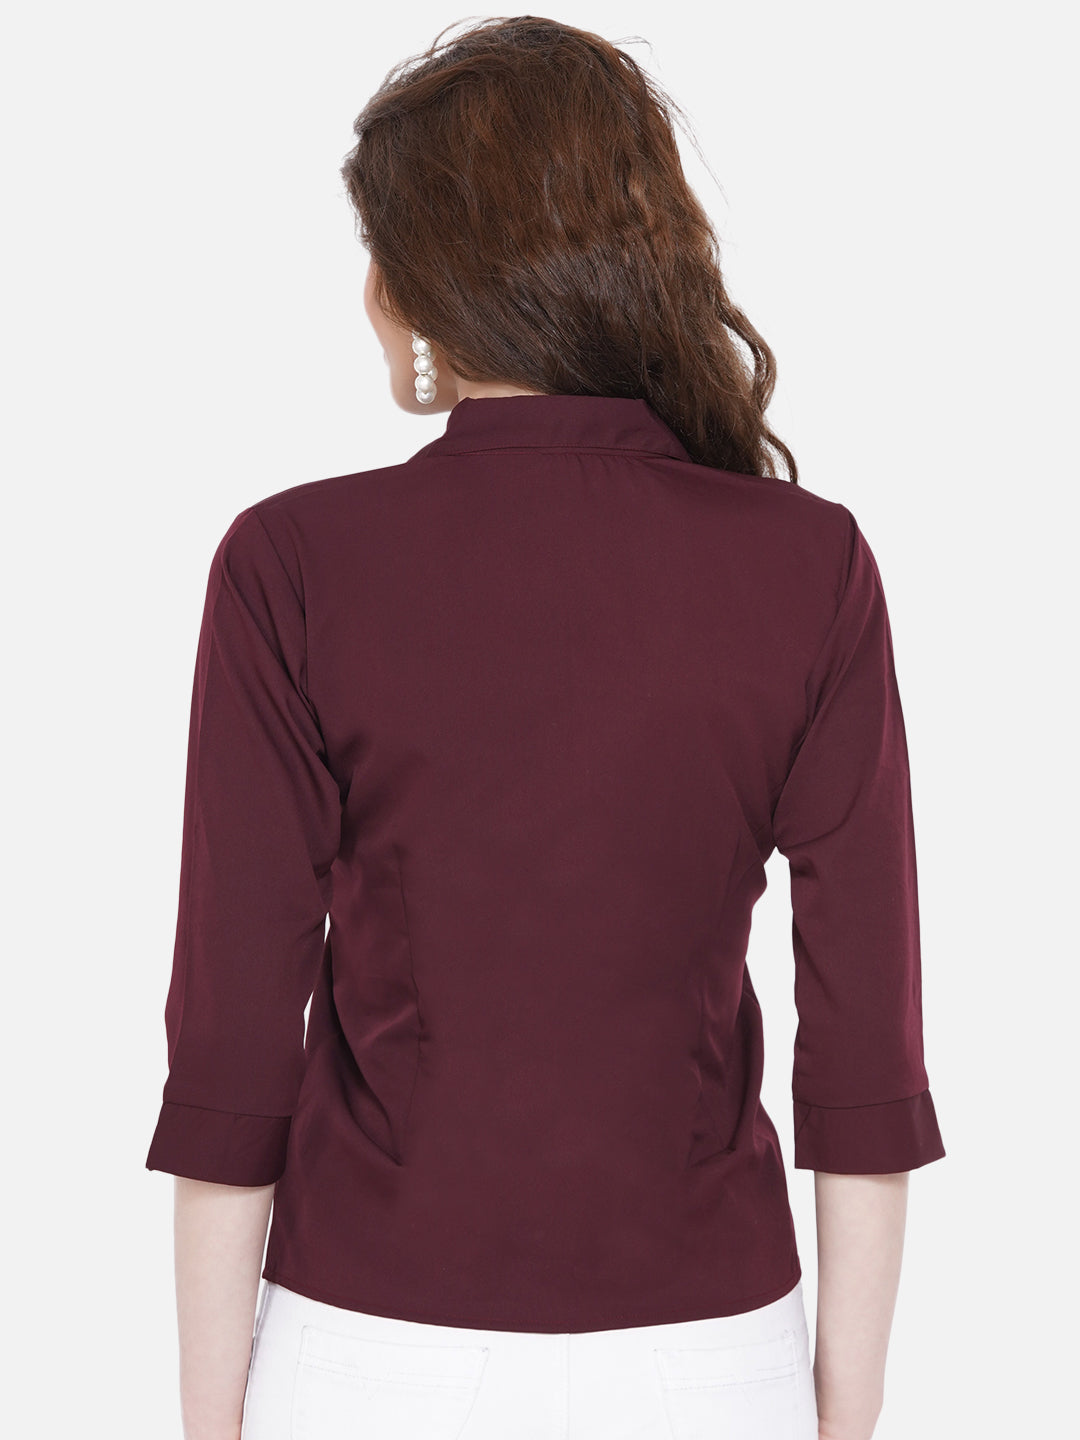 Women's Brown Casual Shirt - Wahe-Noor